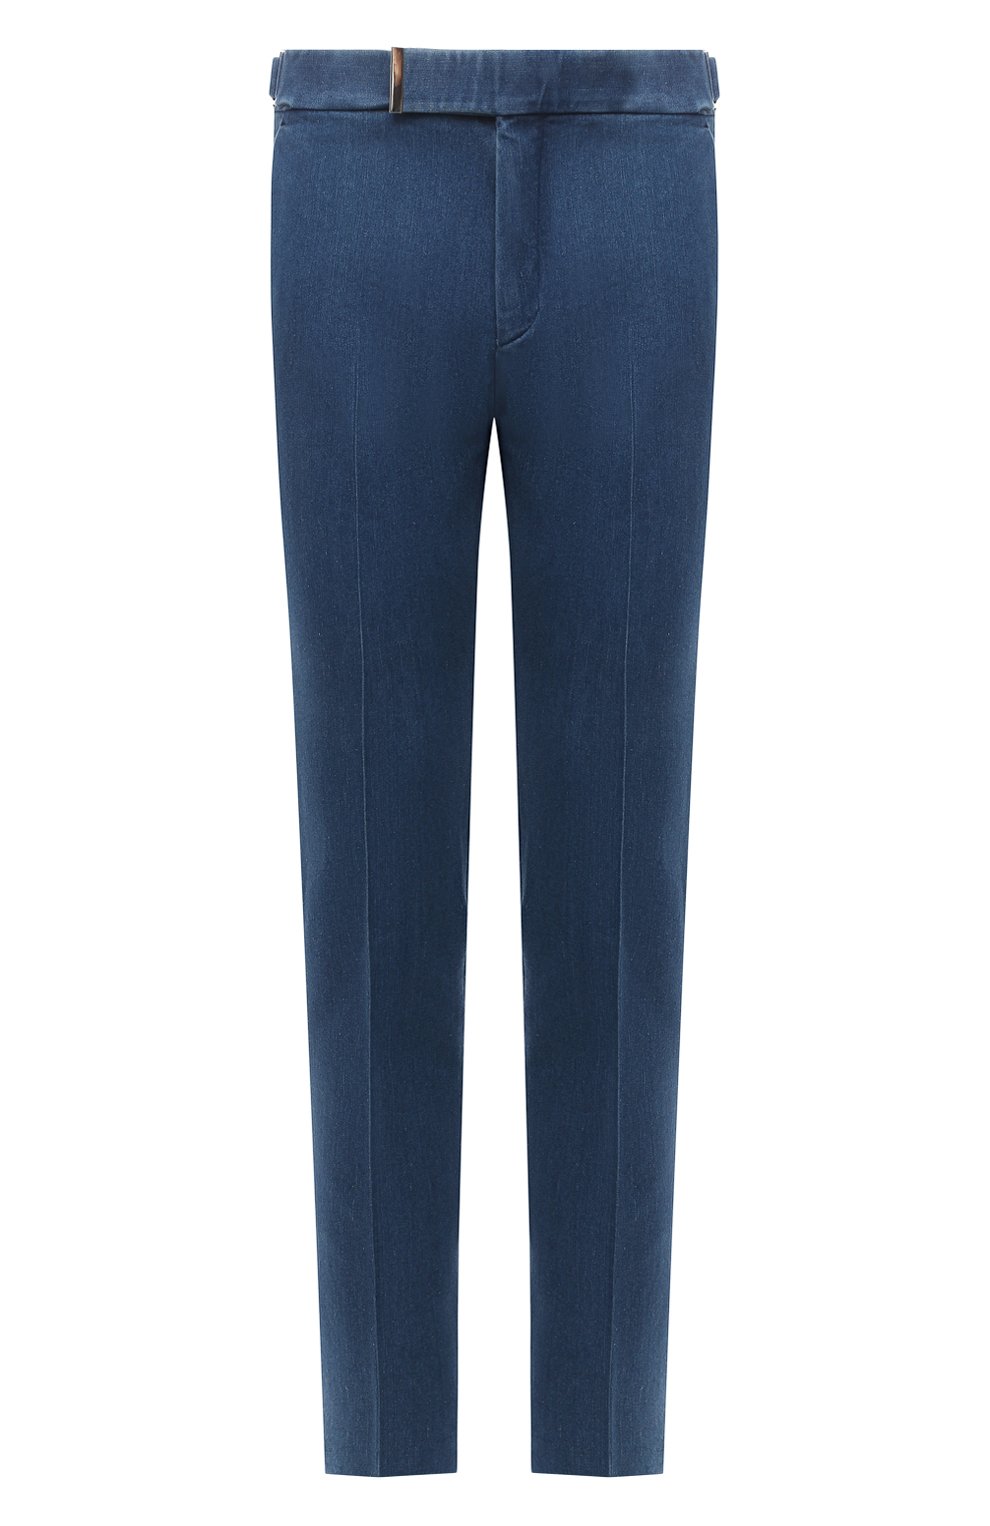 Мужские синие джинсовые брюки TOM FORD купить в интернет-магазине ЦУМ, арт.874R11/778J42